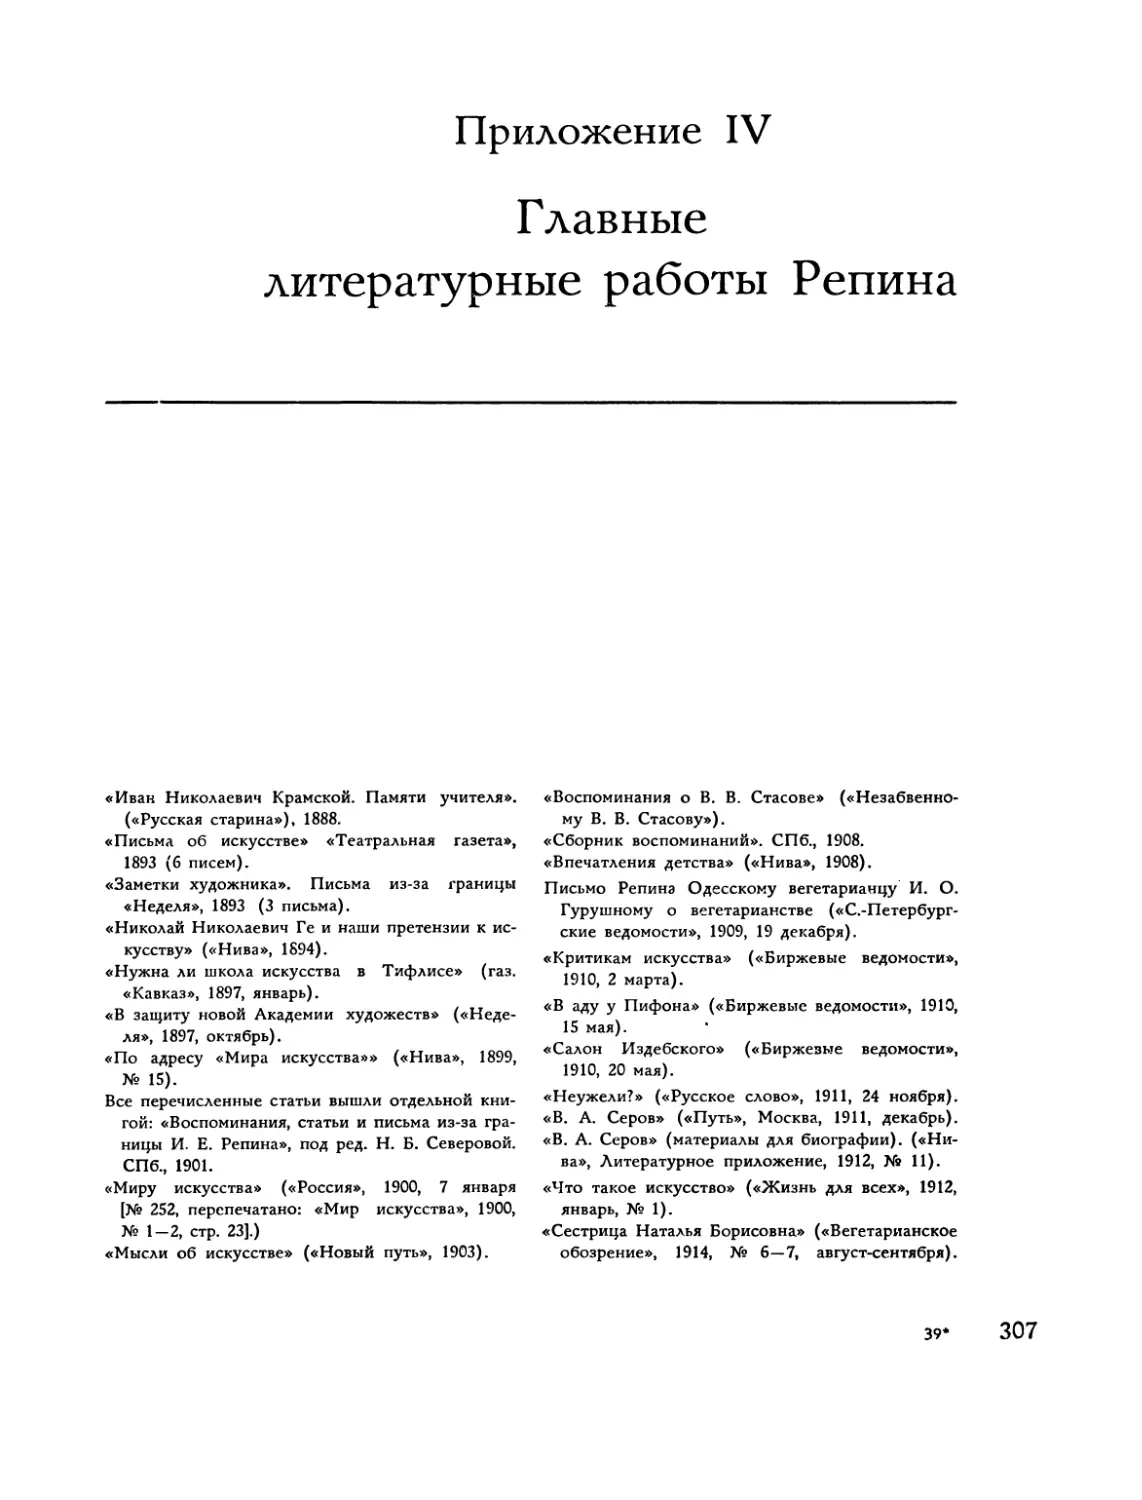 Приложение IV Г лавные литературные работы Репина